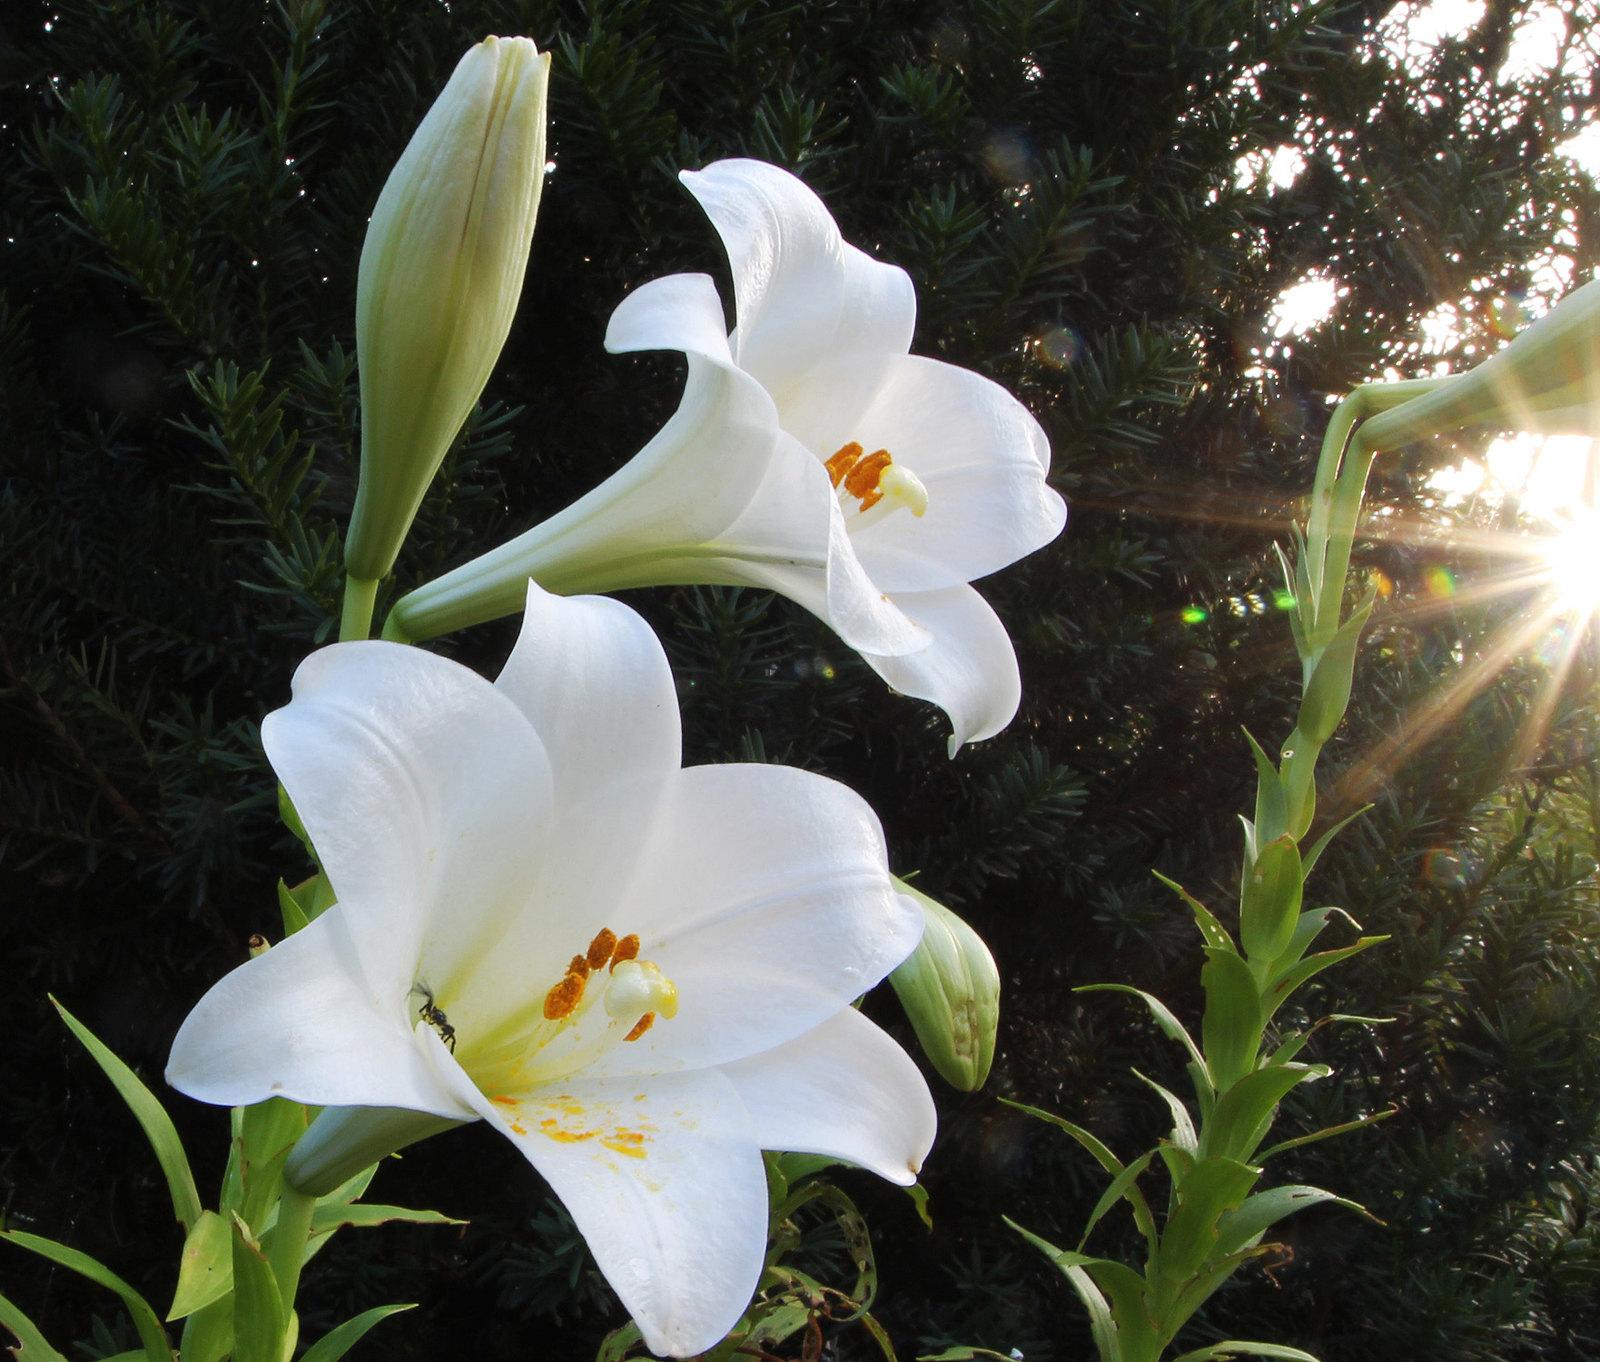 Hoa loa kèn có ý nghĩa gì? Cách trồng và chăm sóc giúp hoa nở đẹp - 4